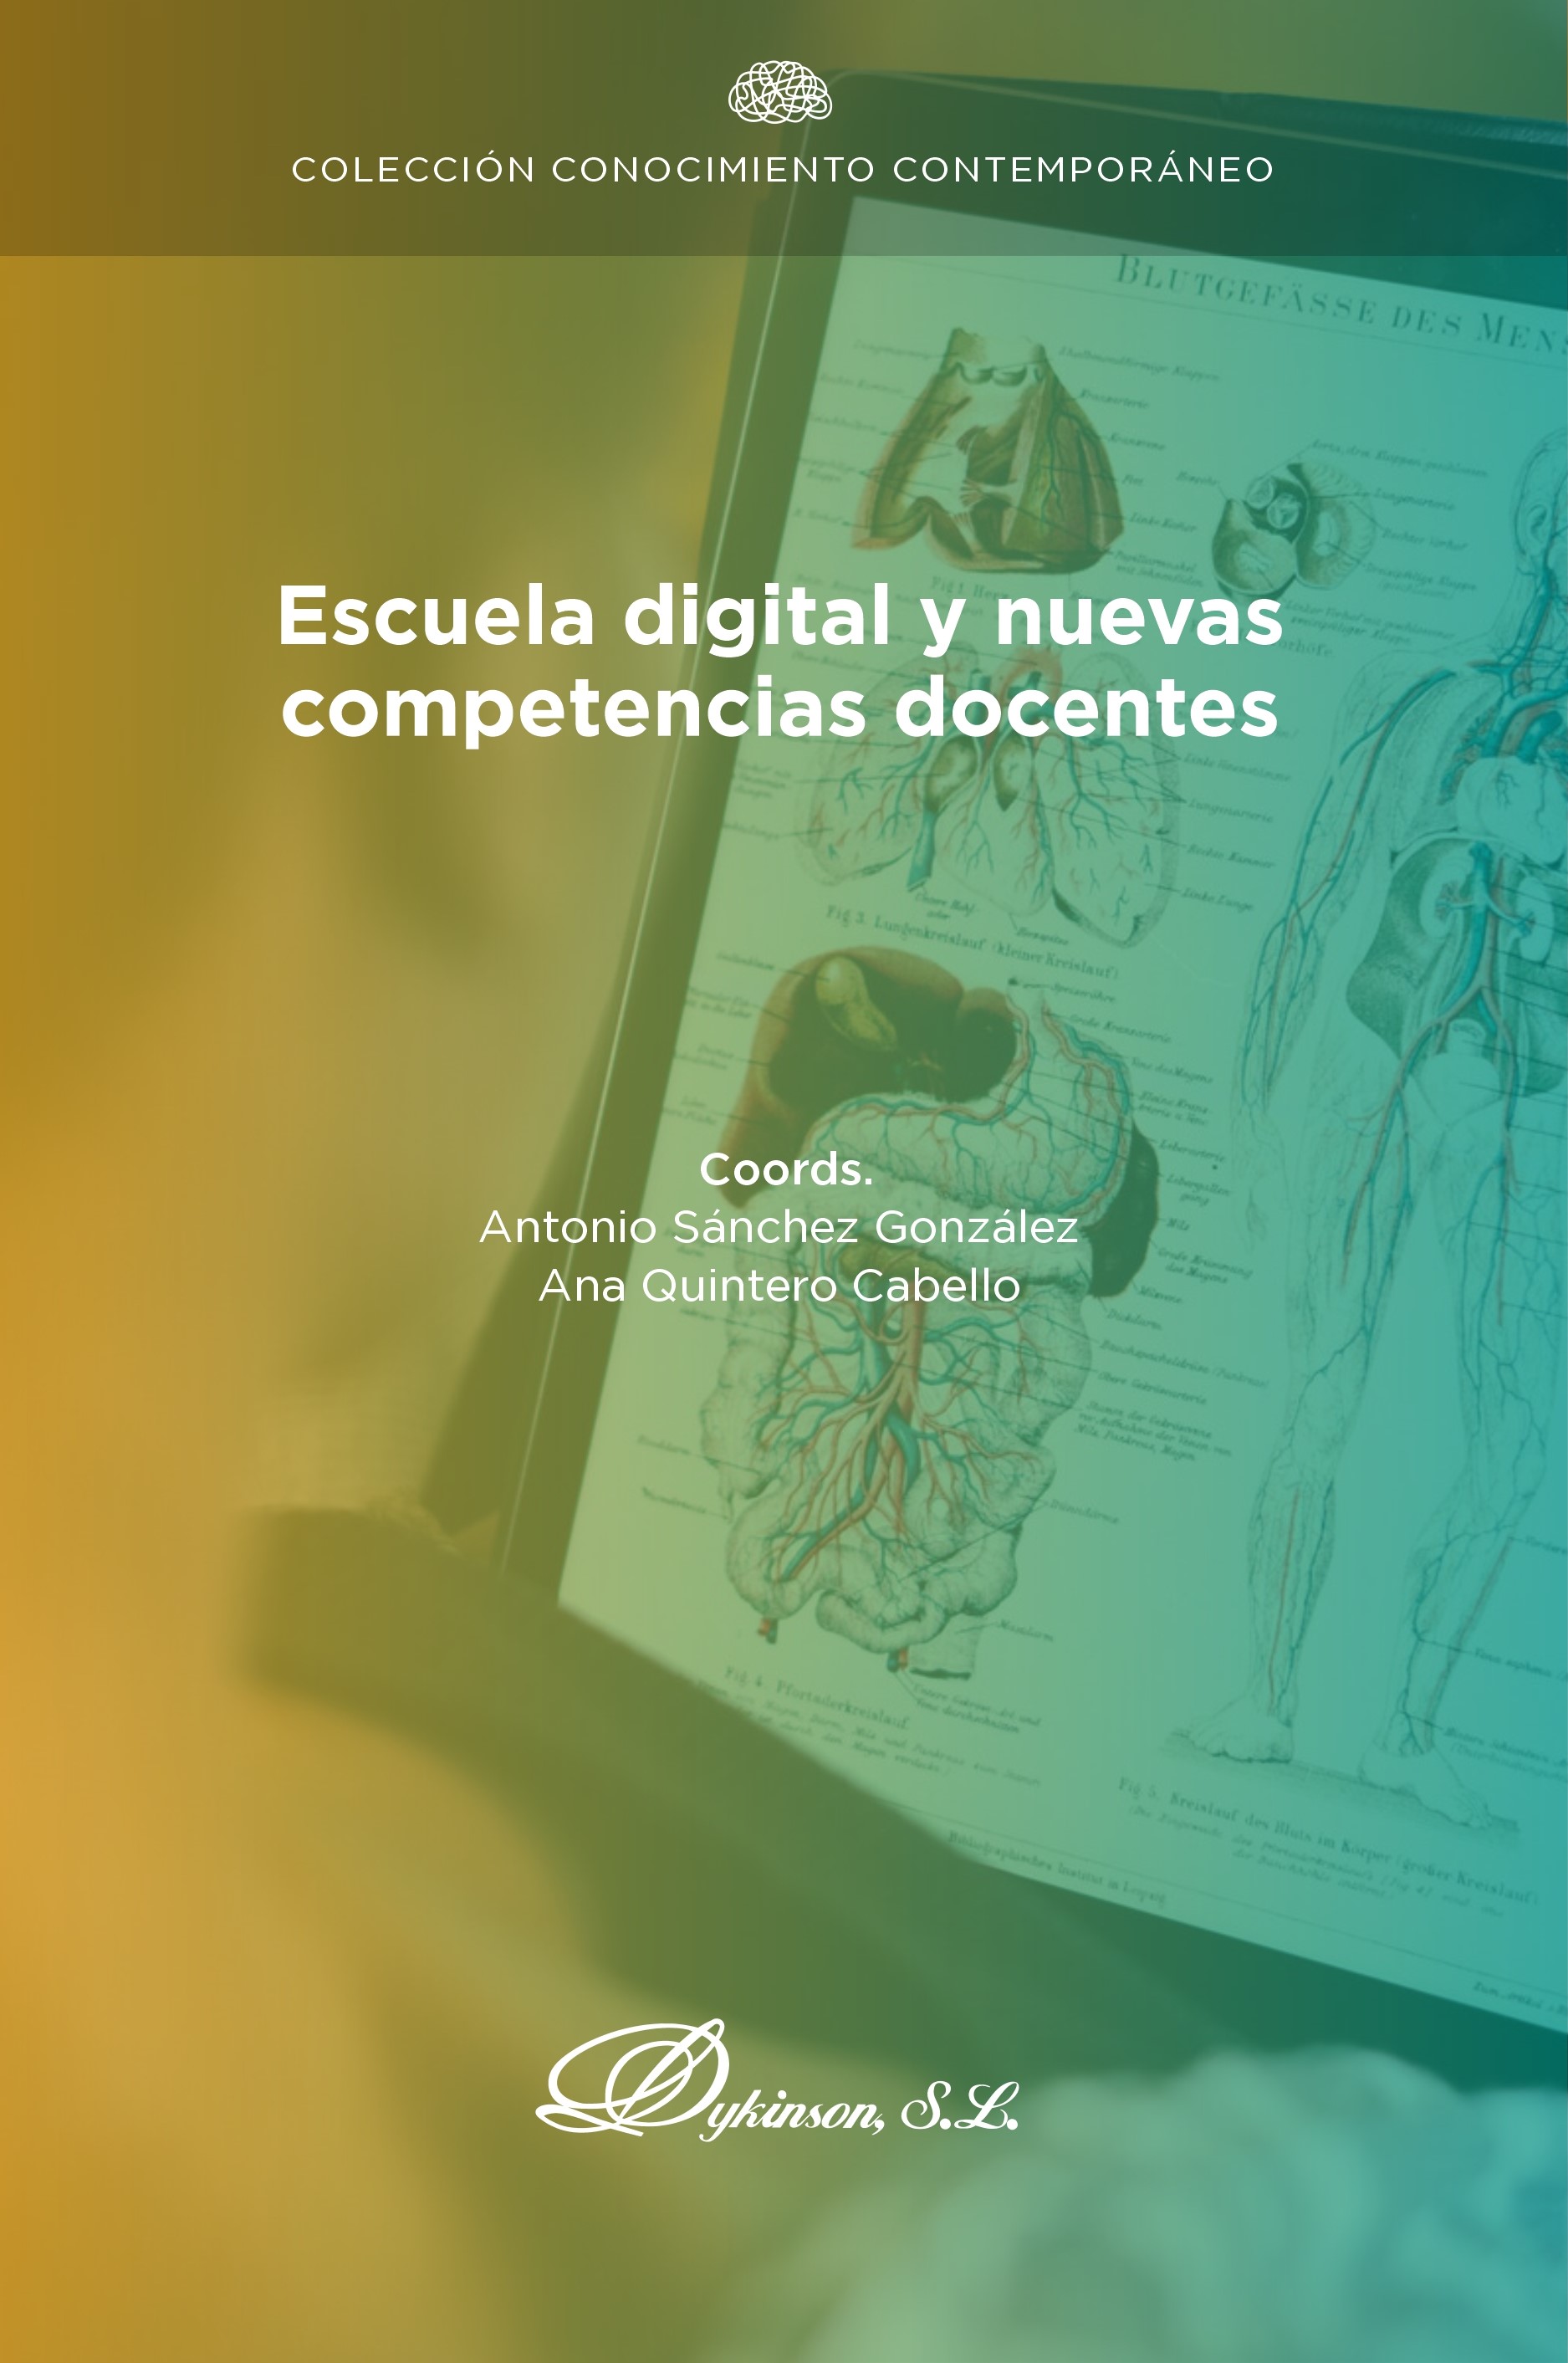 Imagen de portada del libro Escuela digital y nuevas competencias docentes